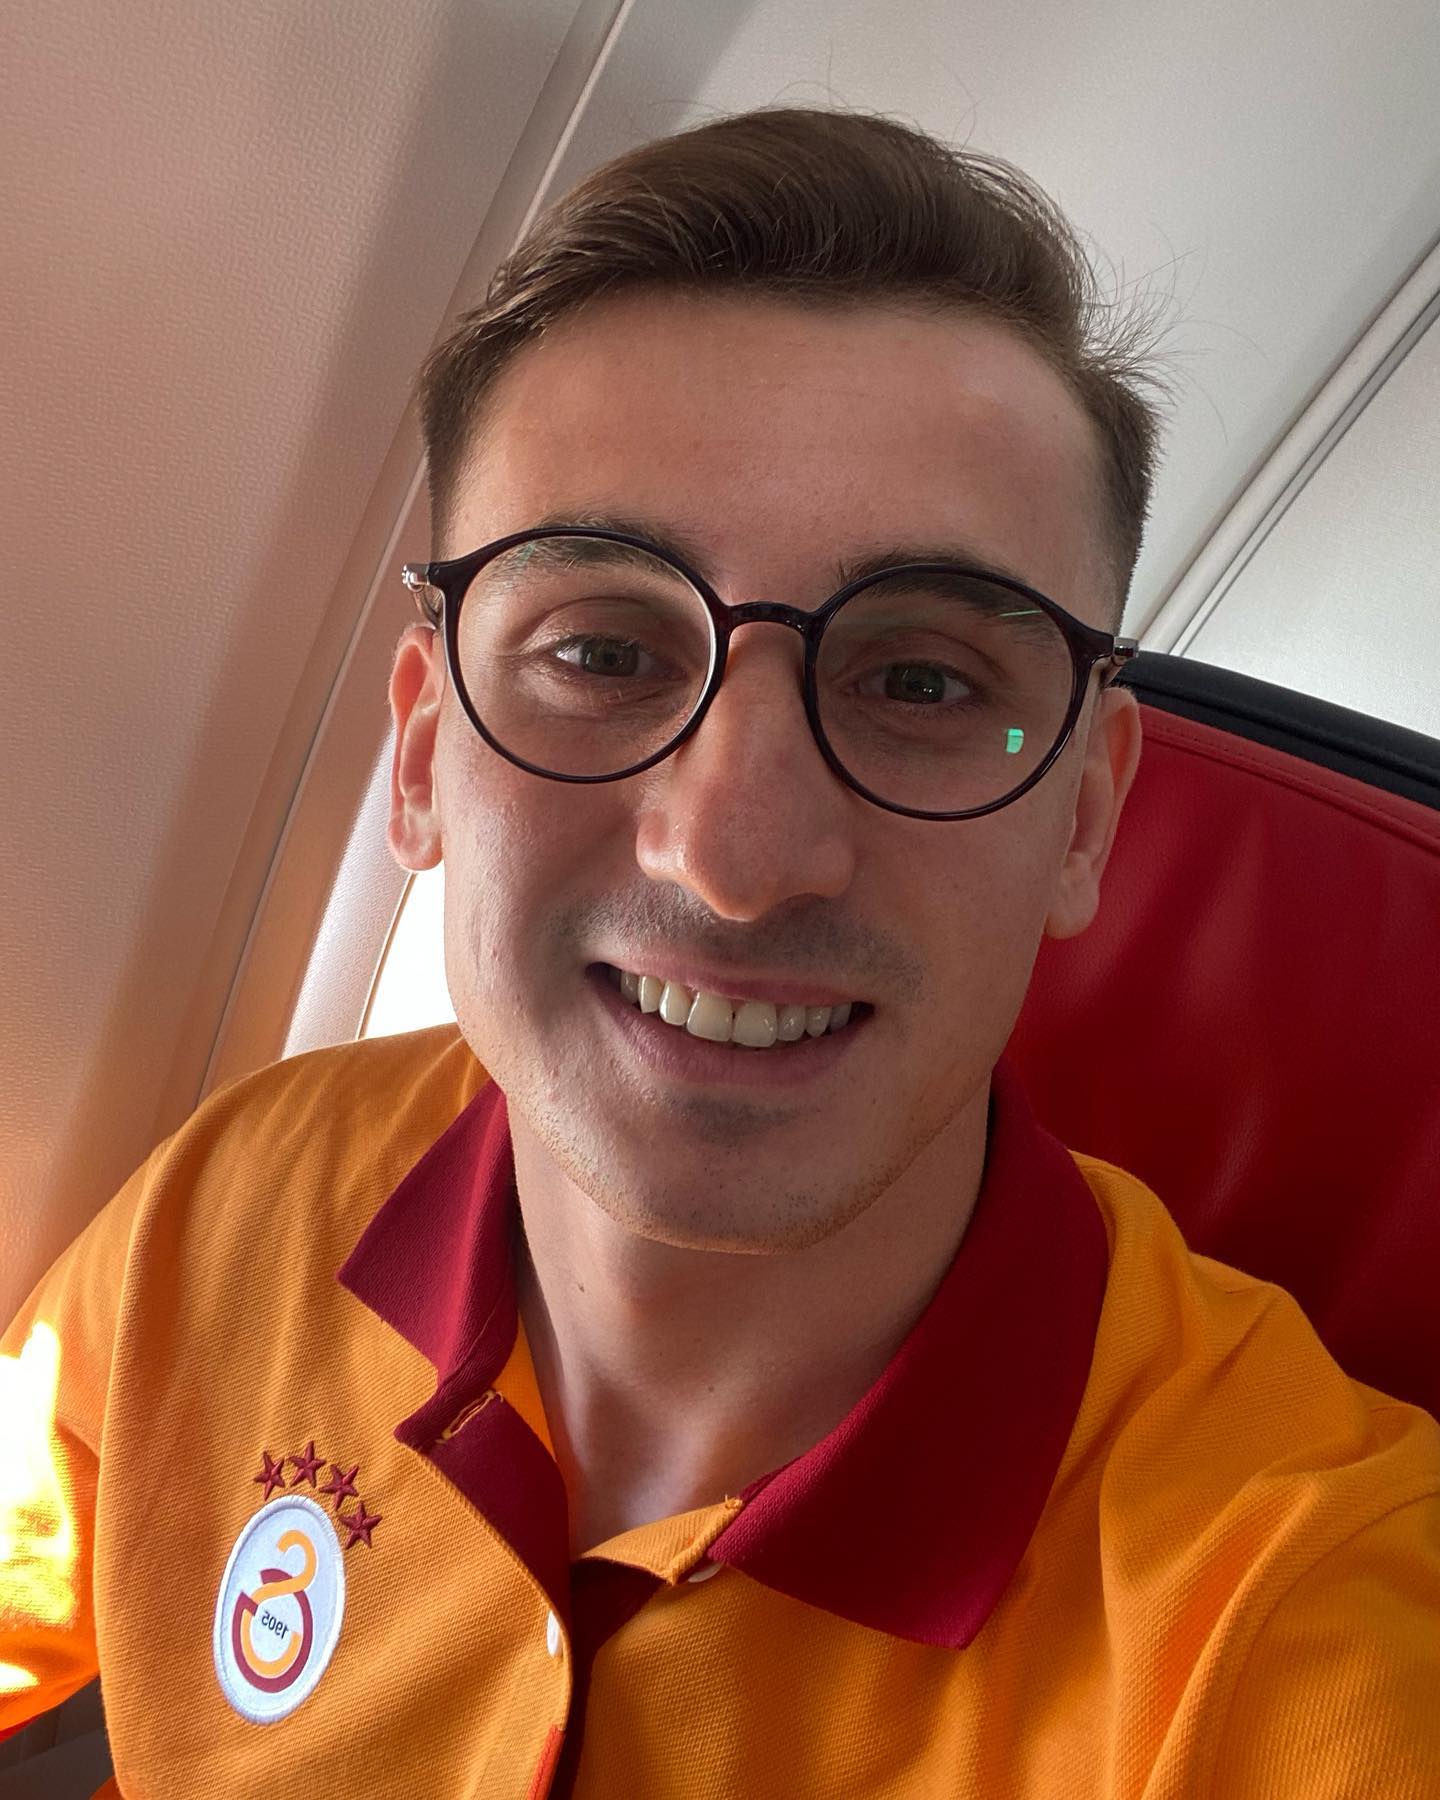 Der türkische Flügelspieler trägt den Spitznamen Harry Potter